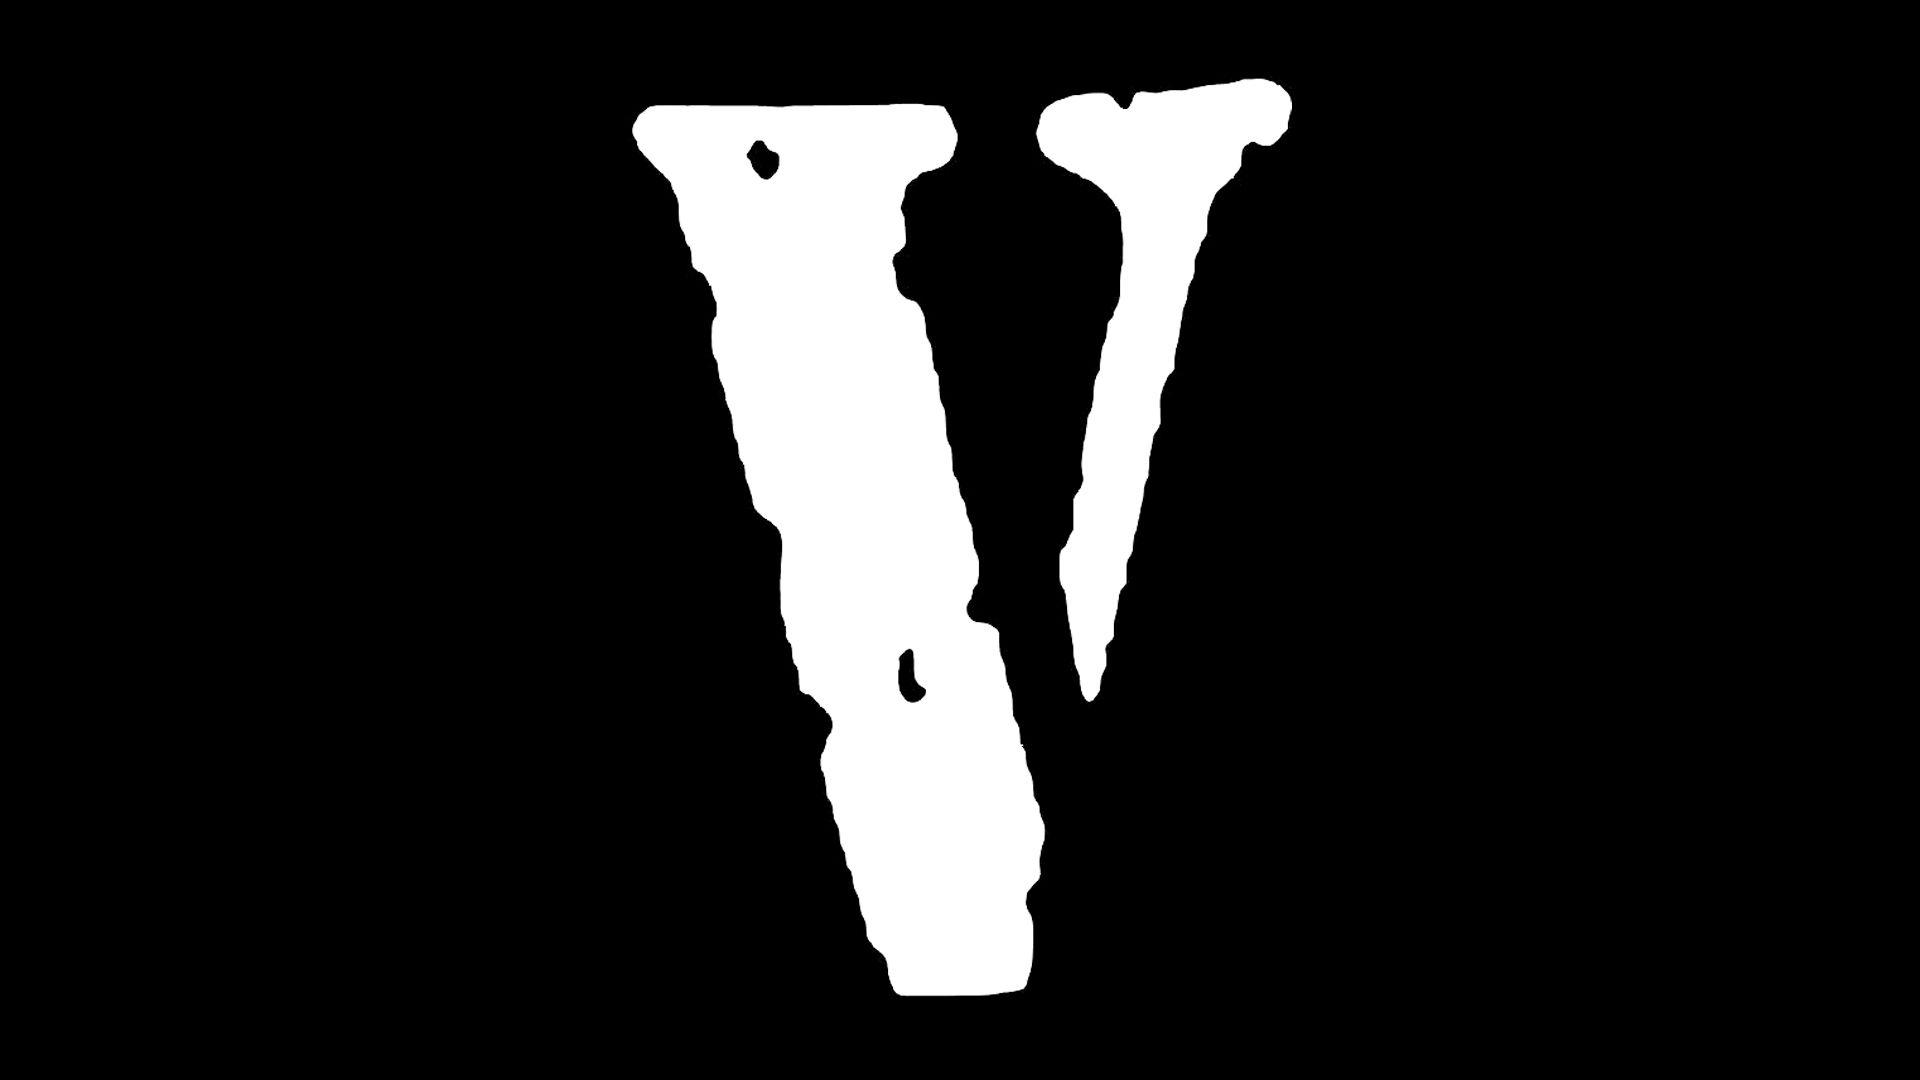 Vlone Brand Logo - Vlone Logo, Vlone Symbol, Meaning, History and Evolution